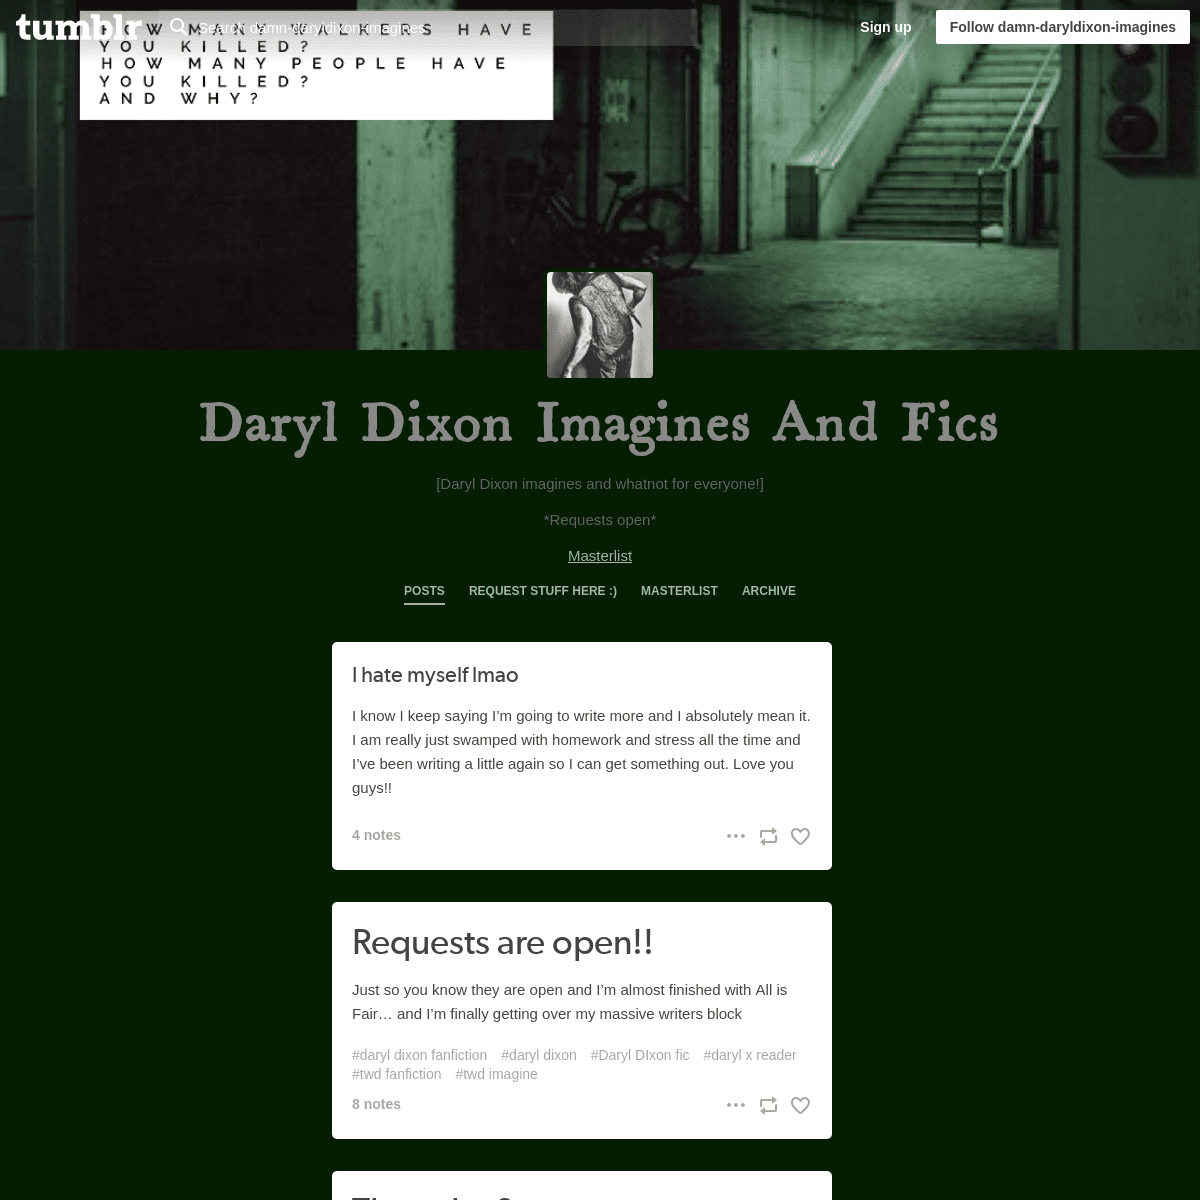 Daryl Dixon Imagines And Fics